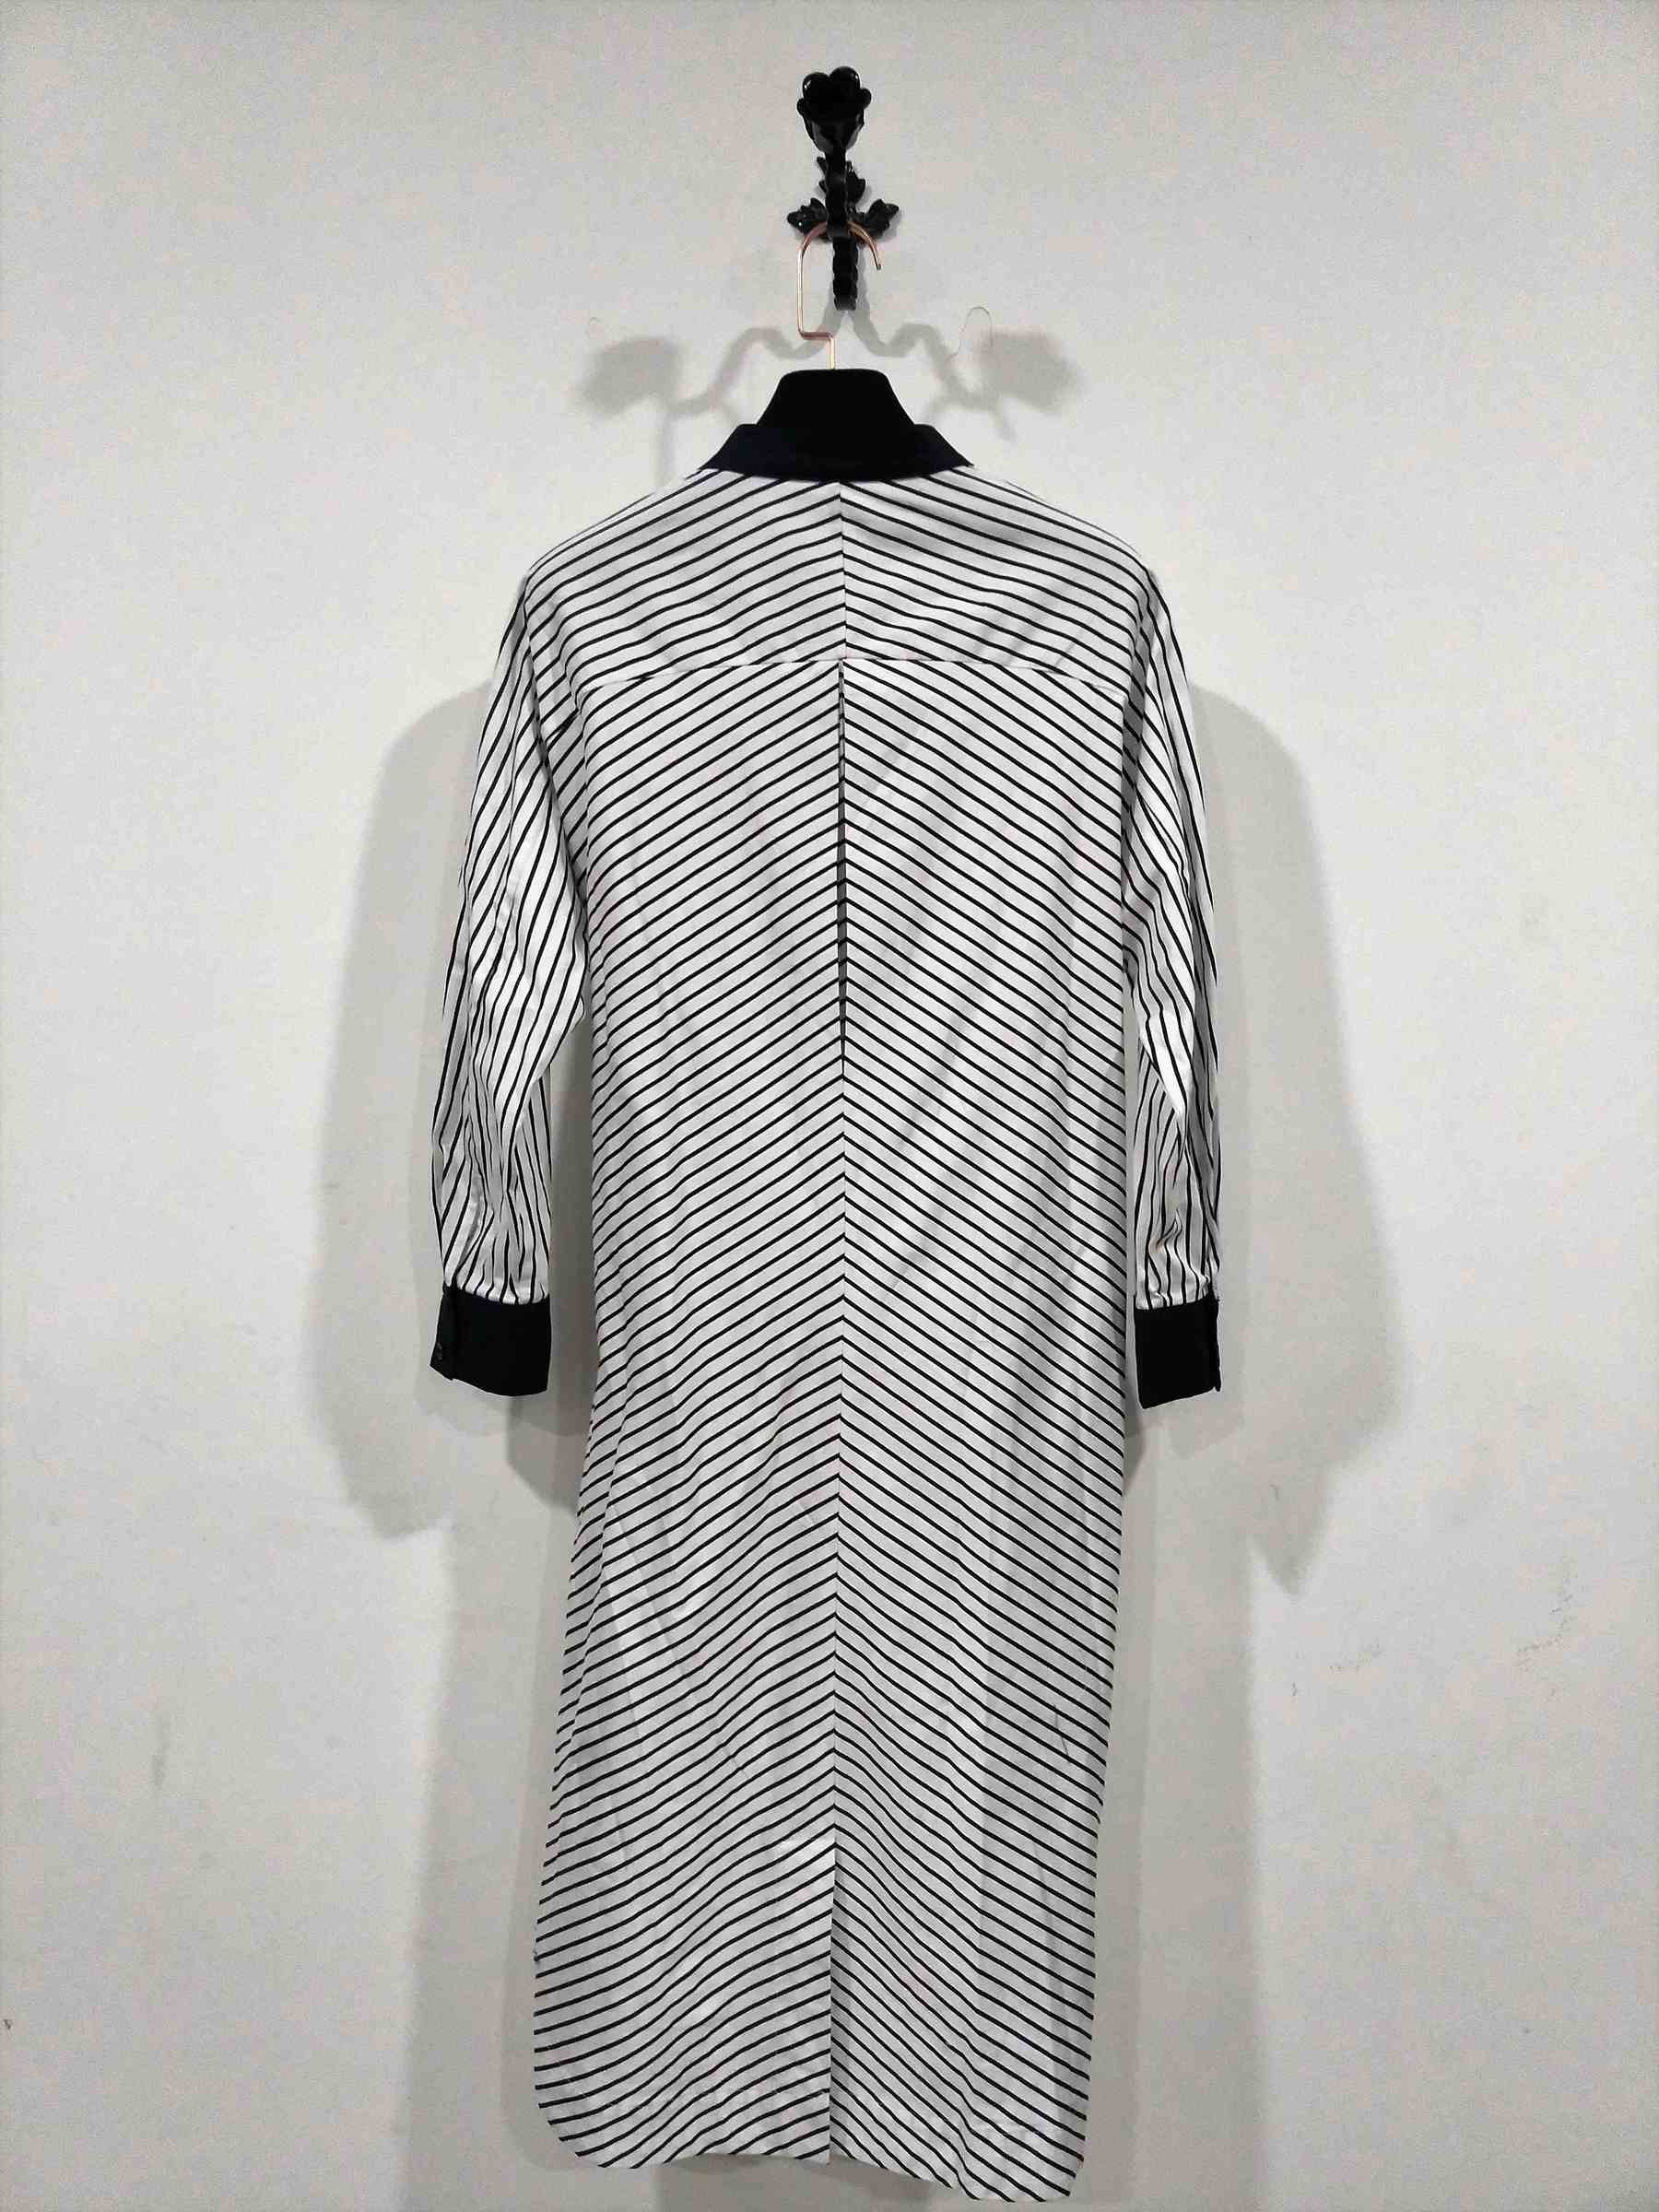 18111617-休閒藍白條紋綁帶襯衫連衣裙 (10).jpg